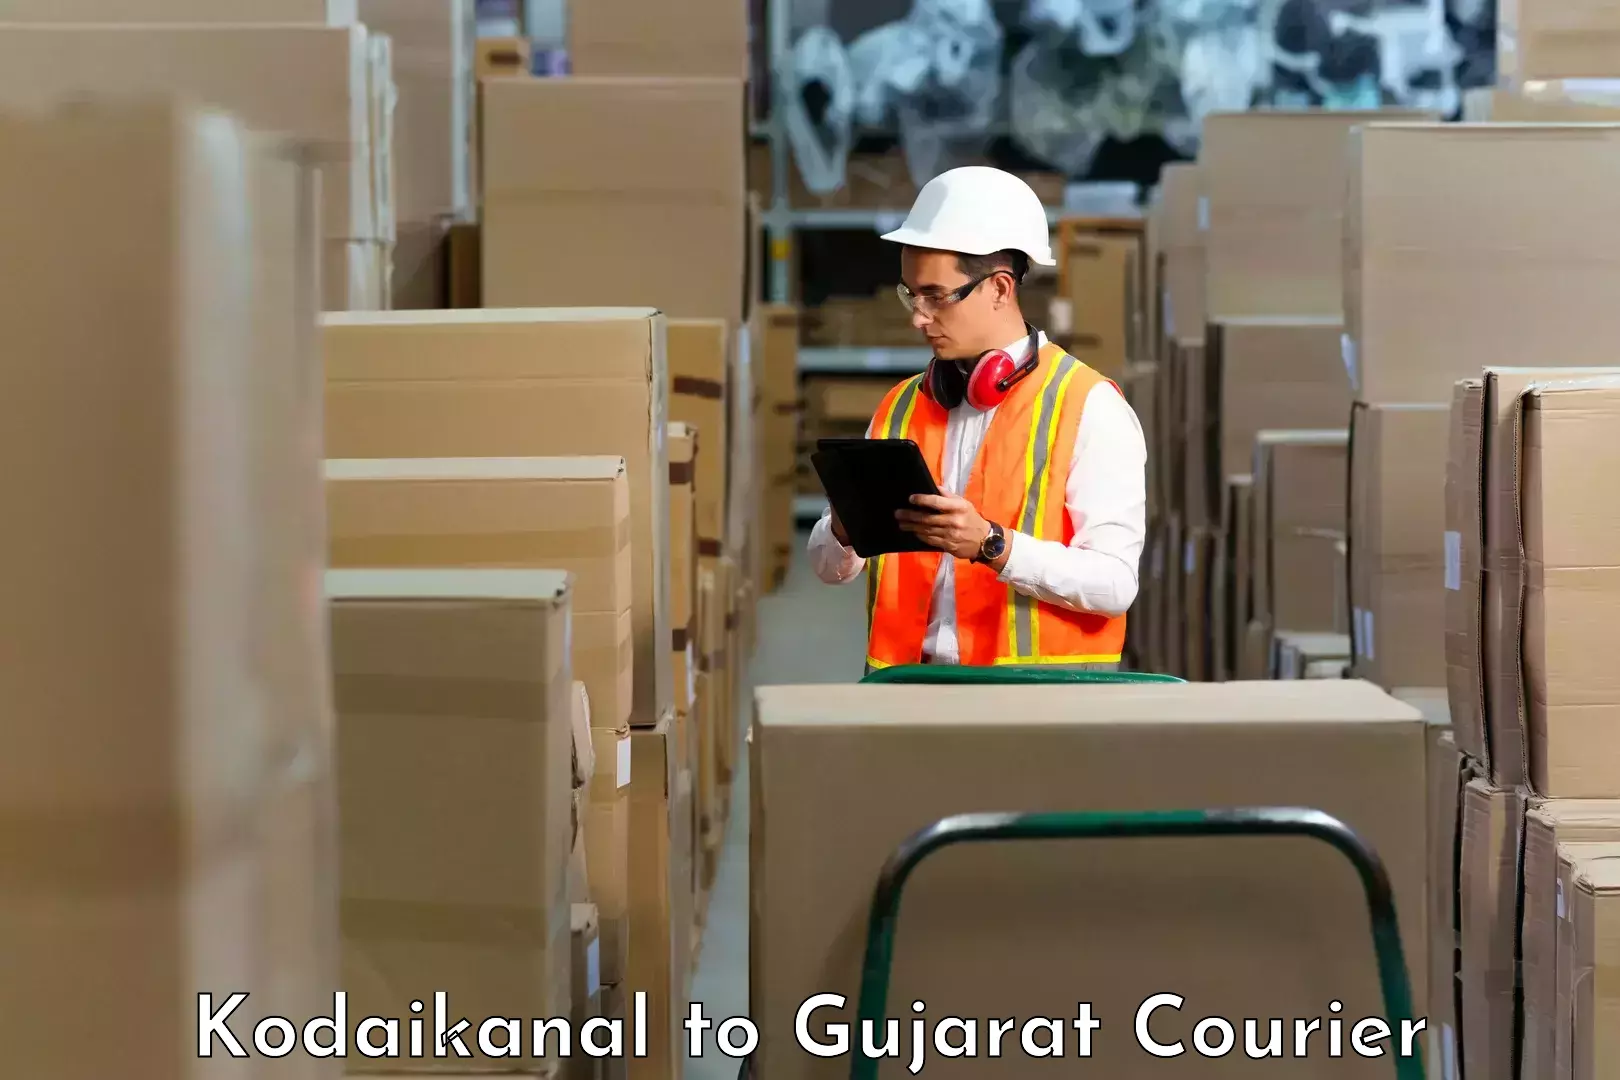 Reliable parcel services Kodaikanal to Vadodara